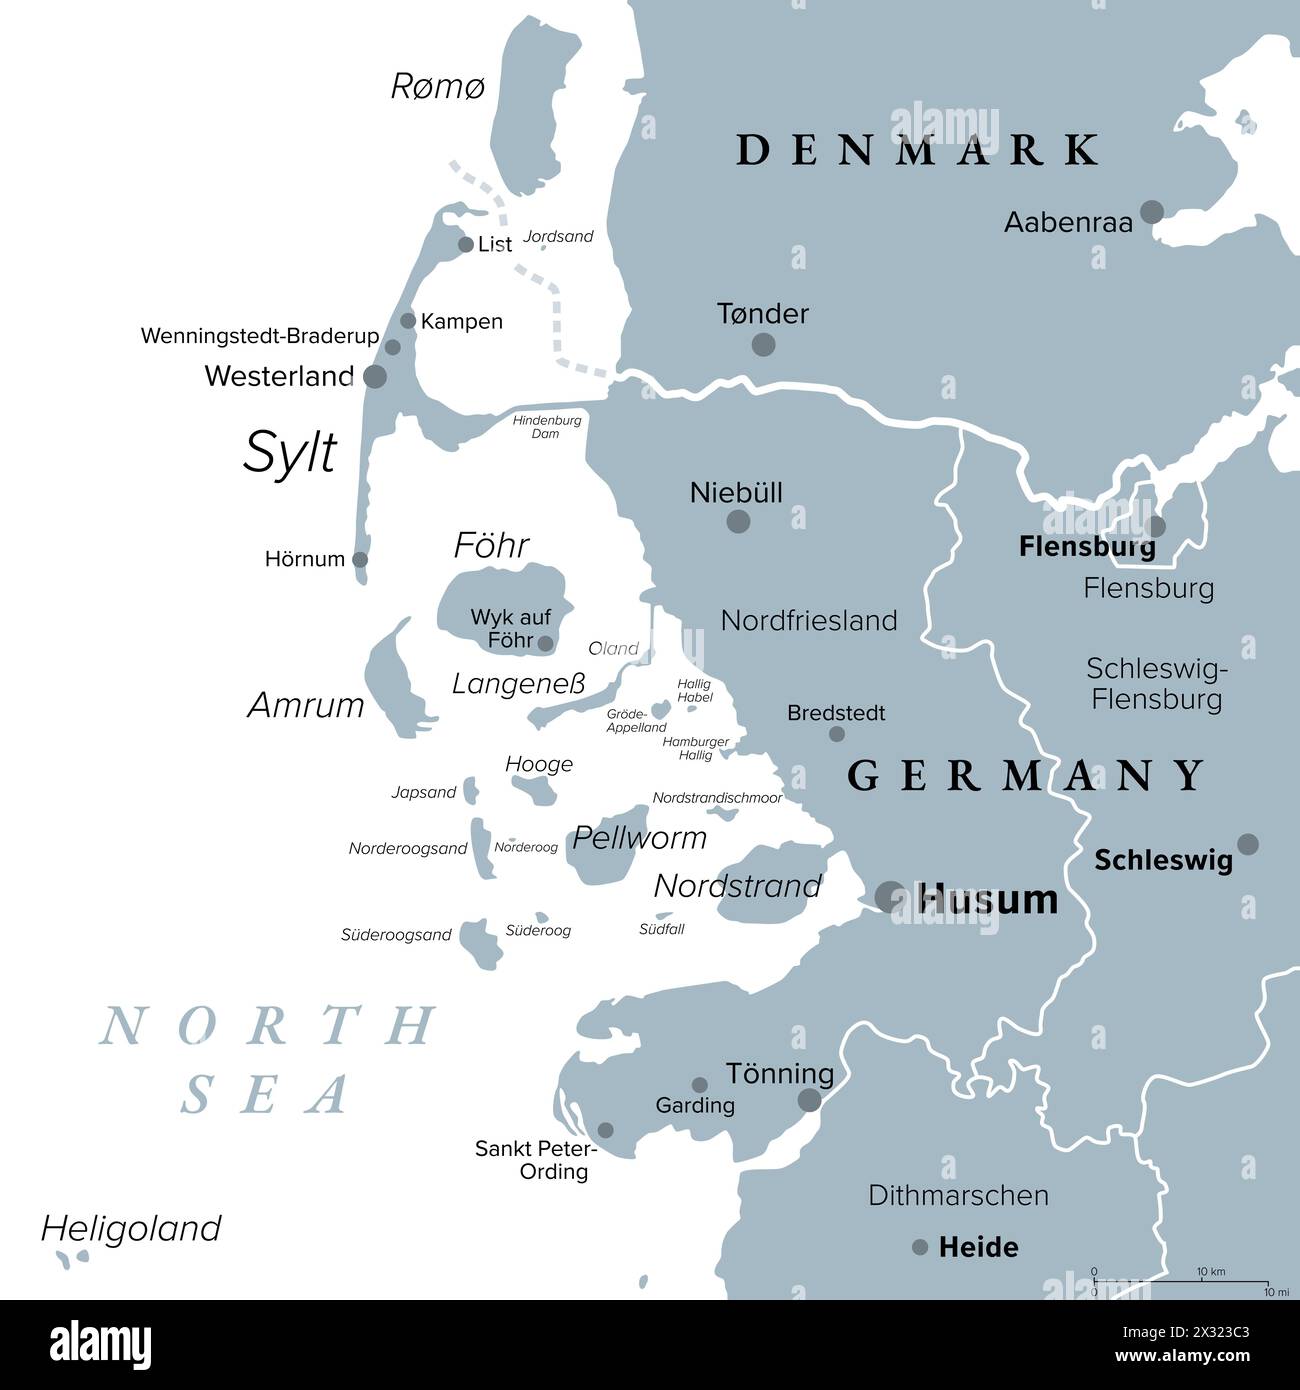 Nordfriesland oder Nordfriesland, graue politische Karte. Landkreis Deutschland, Teil von Schleswig-Holstein, mit Hauptstadt Husum und Insel Sylt. Stockfoto